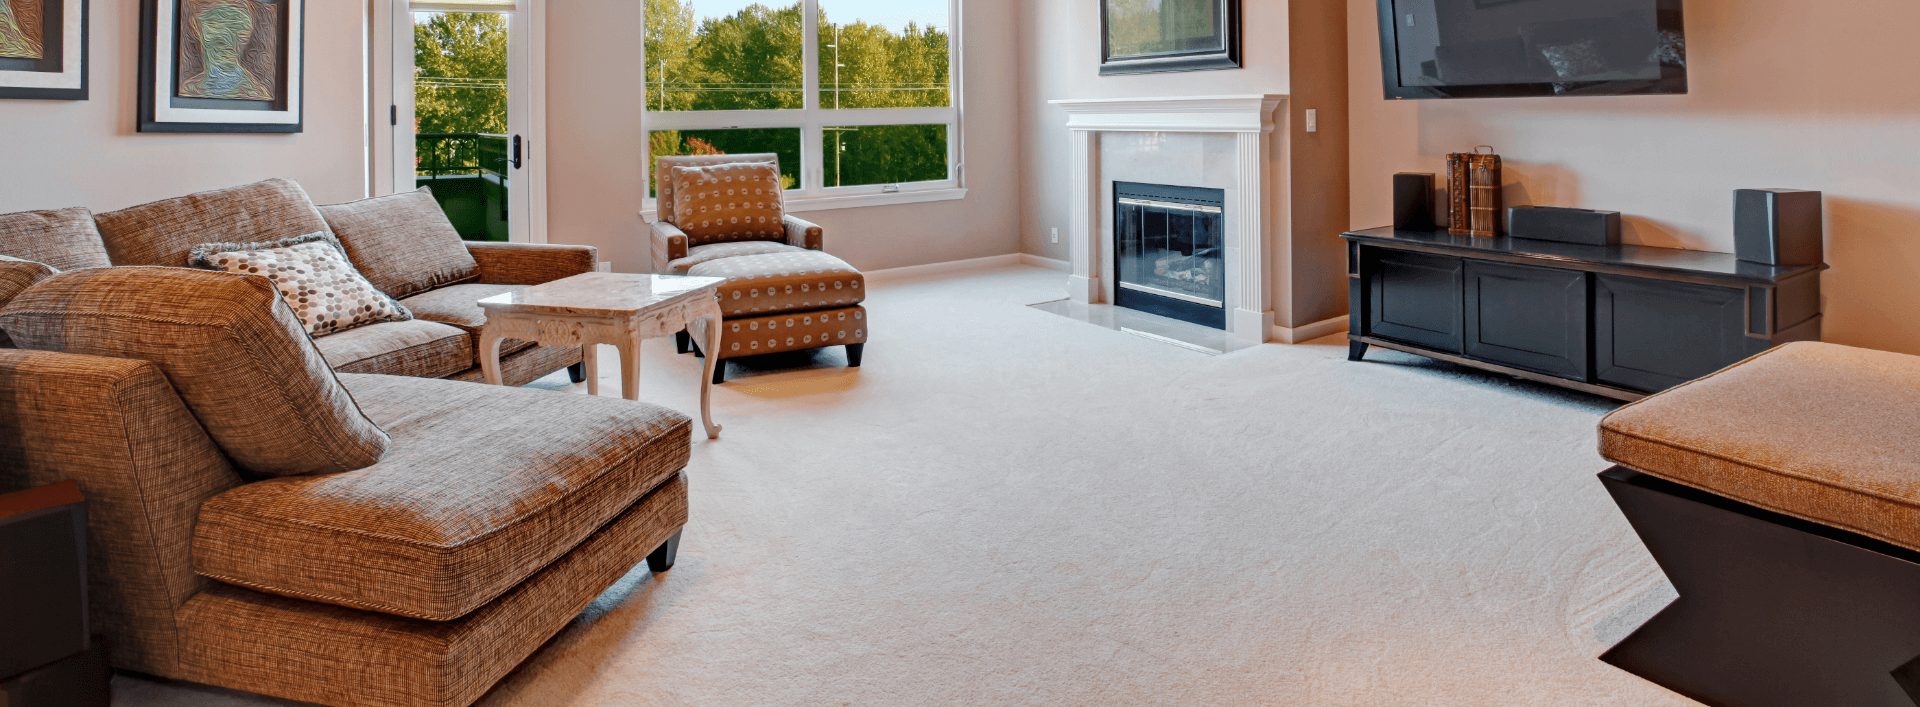 正式客厅的轻地毯